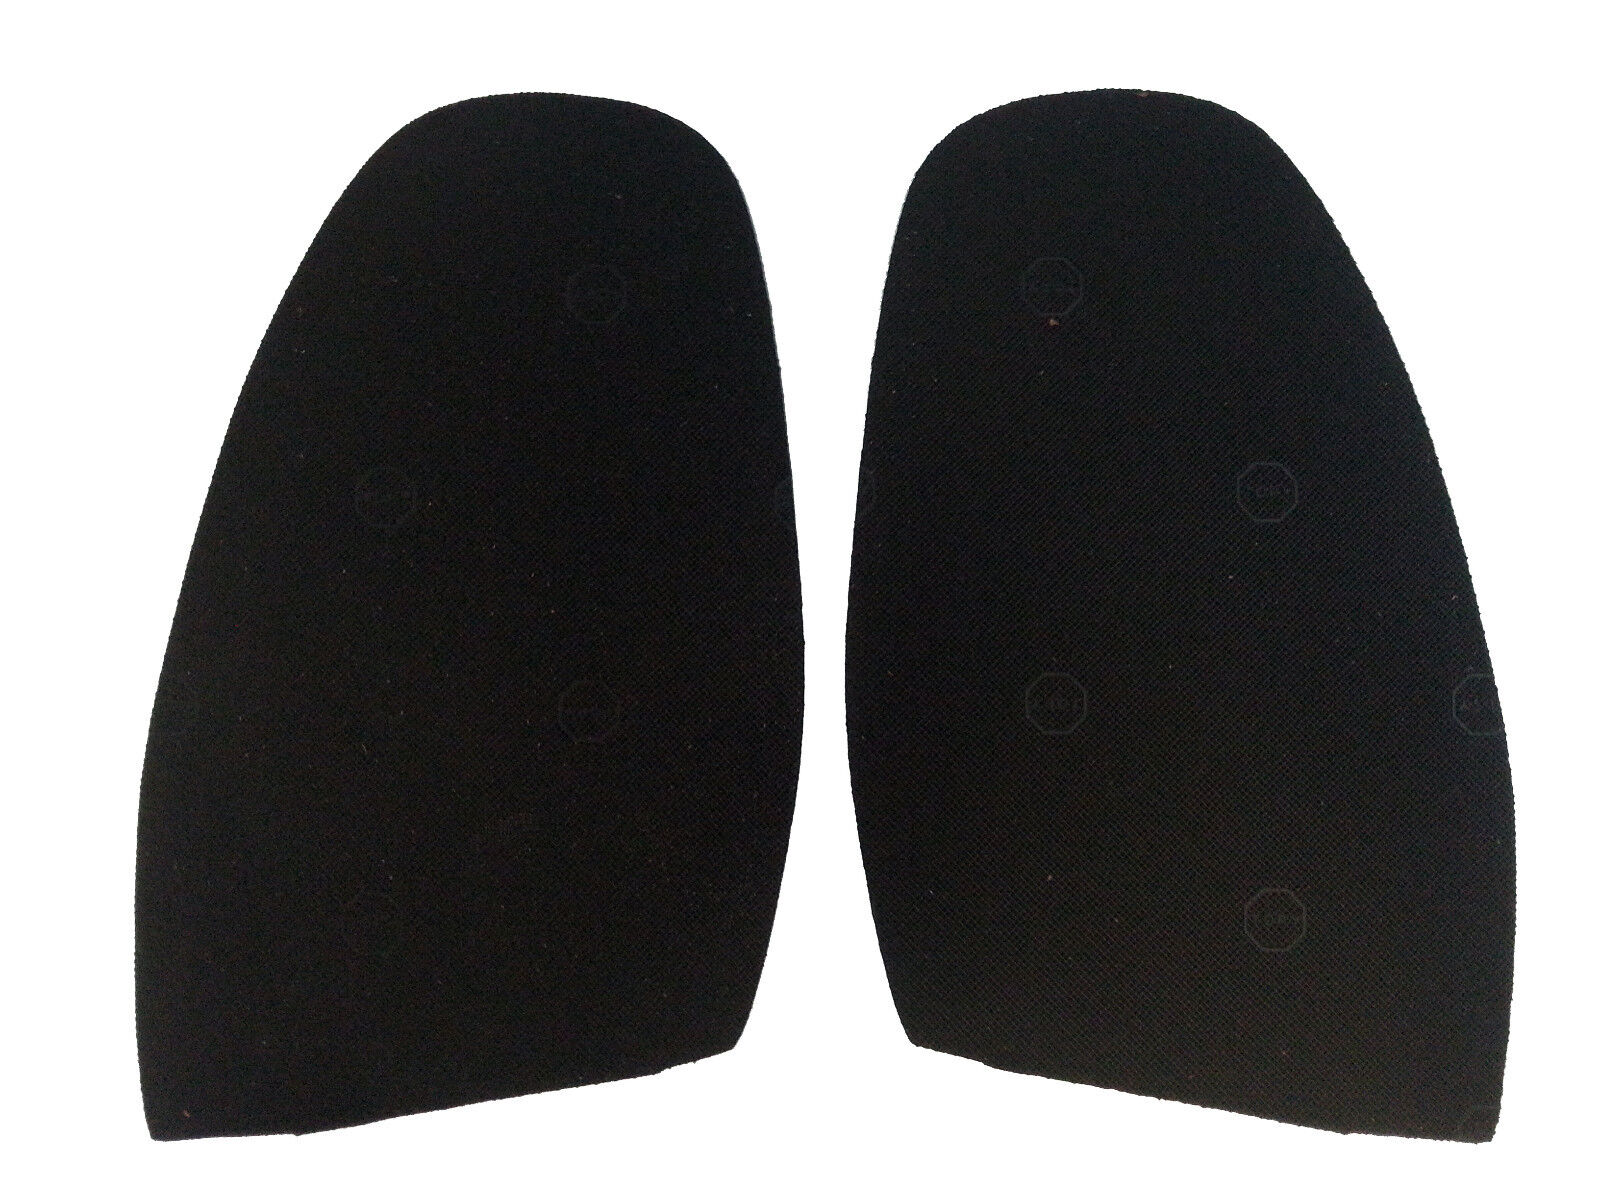  Rubber Soles Topy Shoe Repair - DIY - Mens  - 1.5mm Professional Grade x5 Pairs